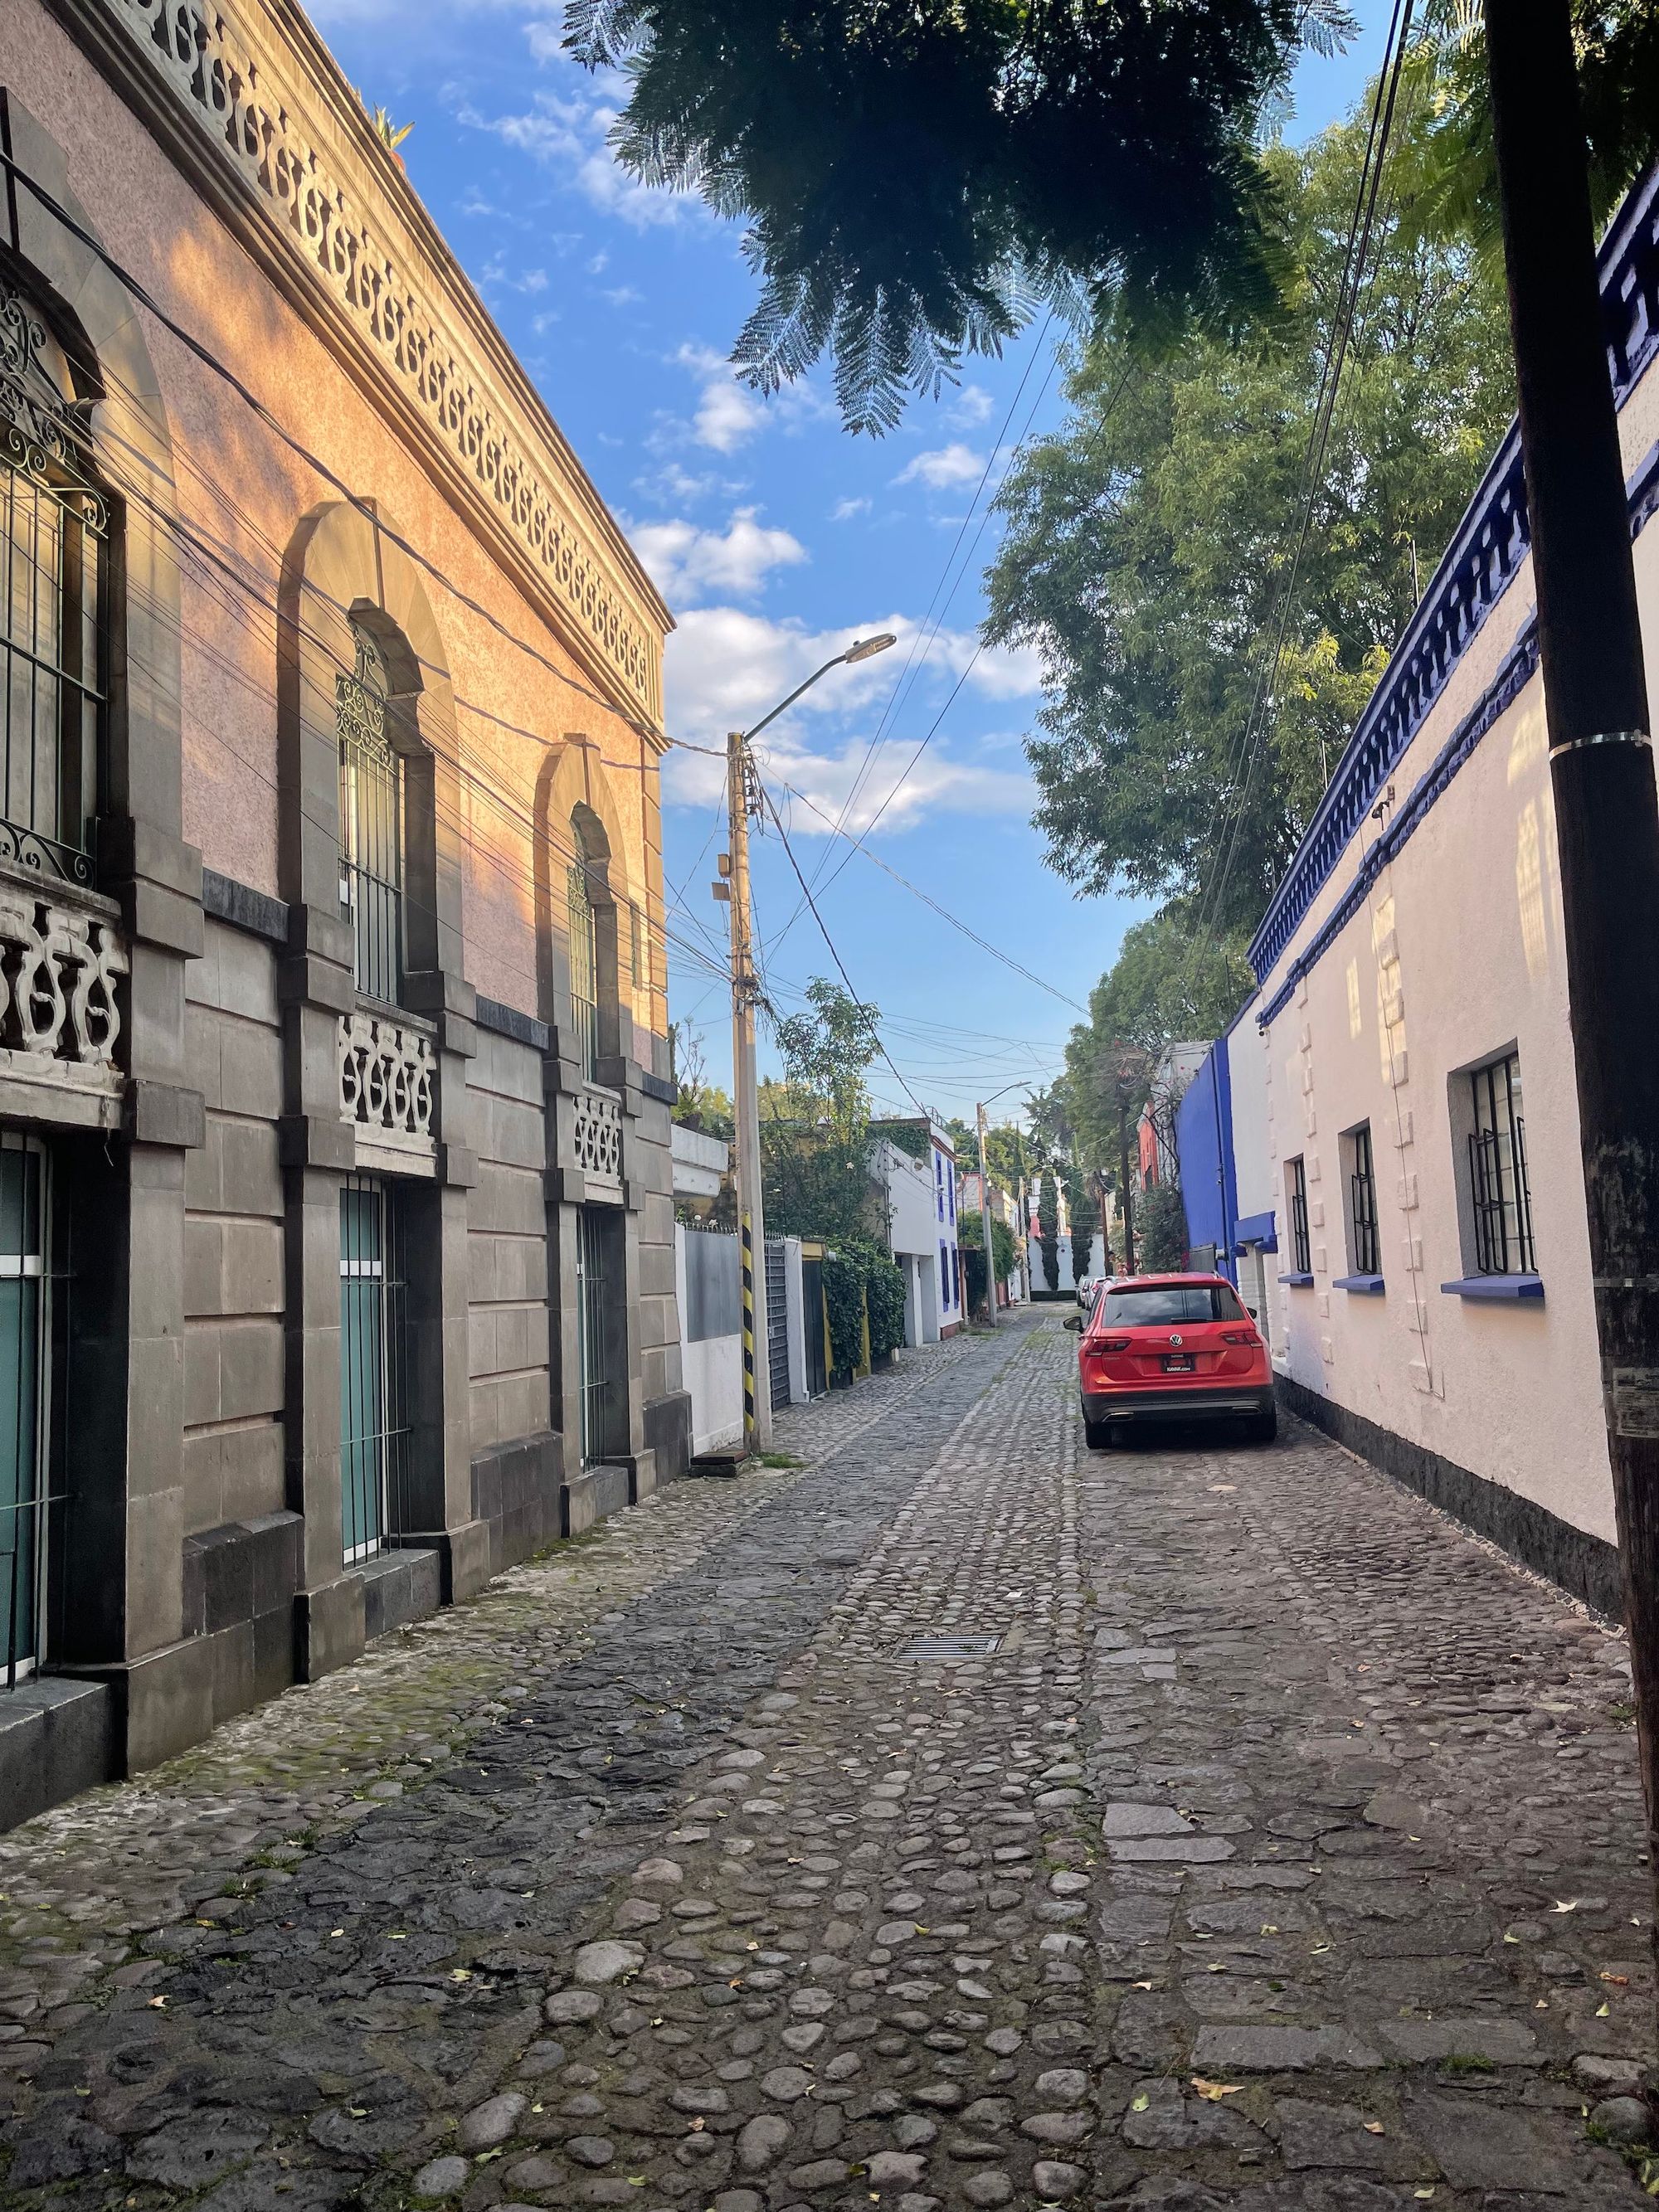 Cobble street in Coayacán